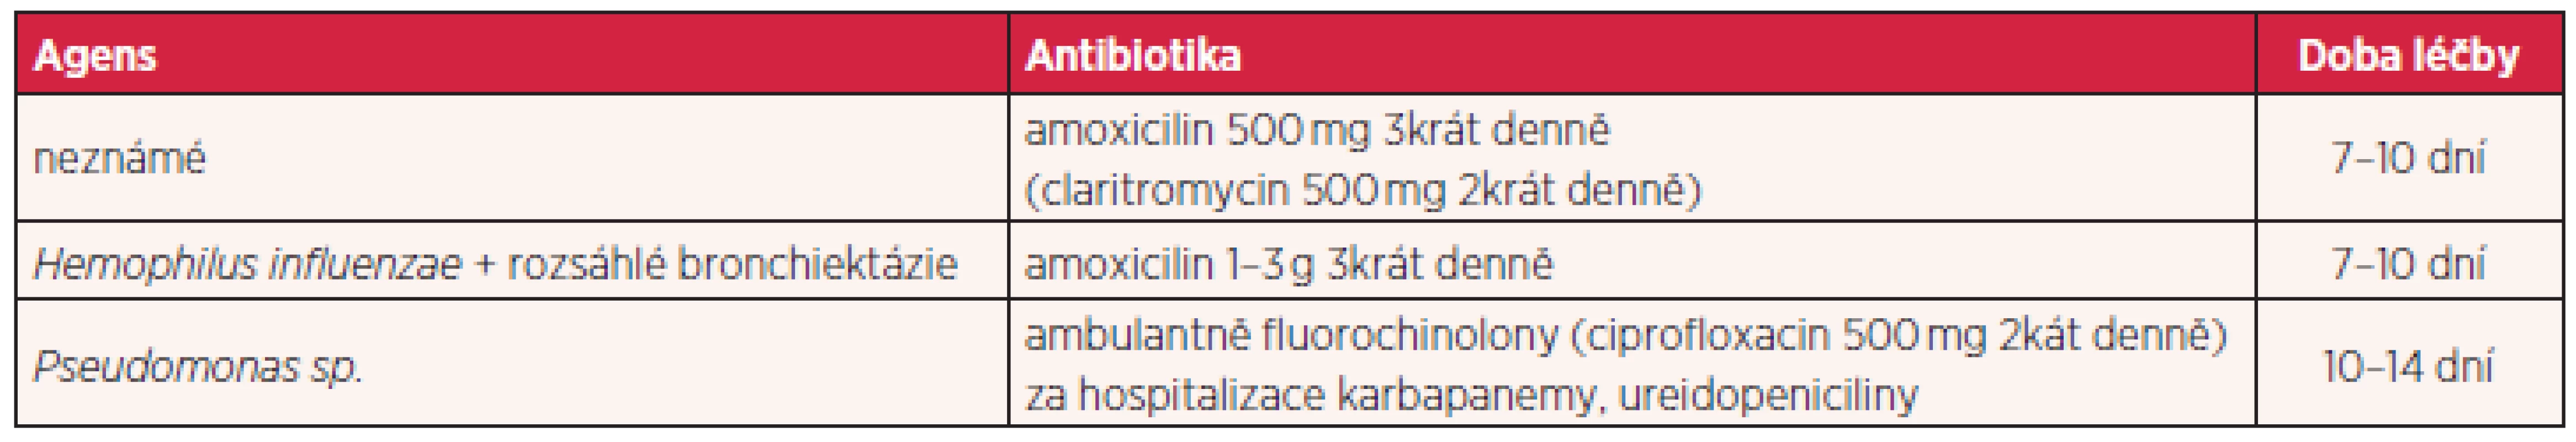 Doporučená systémová antibiotická léčba u nemocných s bronchiektáziemi dle typu kolonizujícího agens